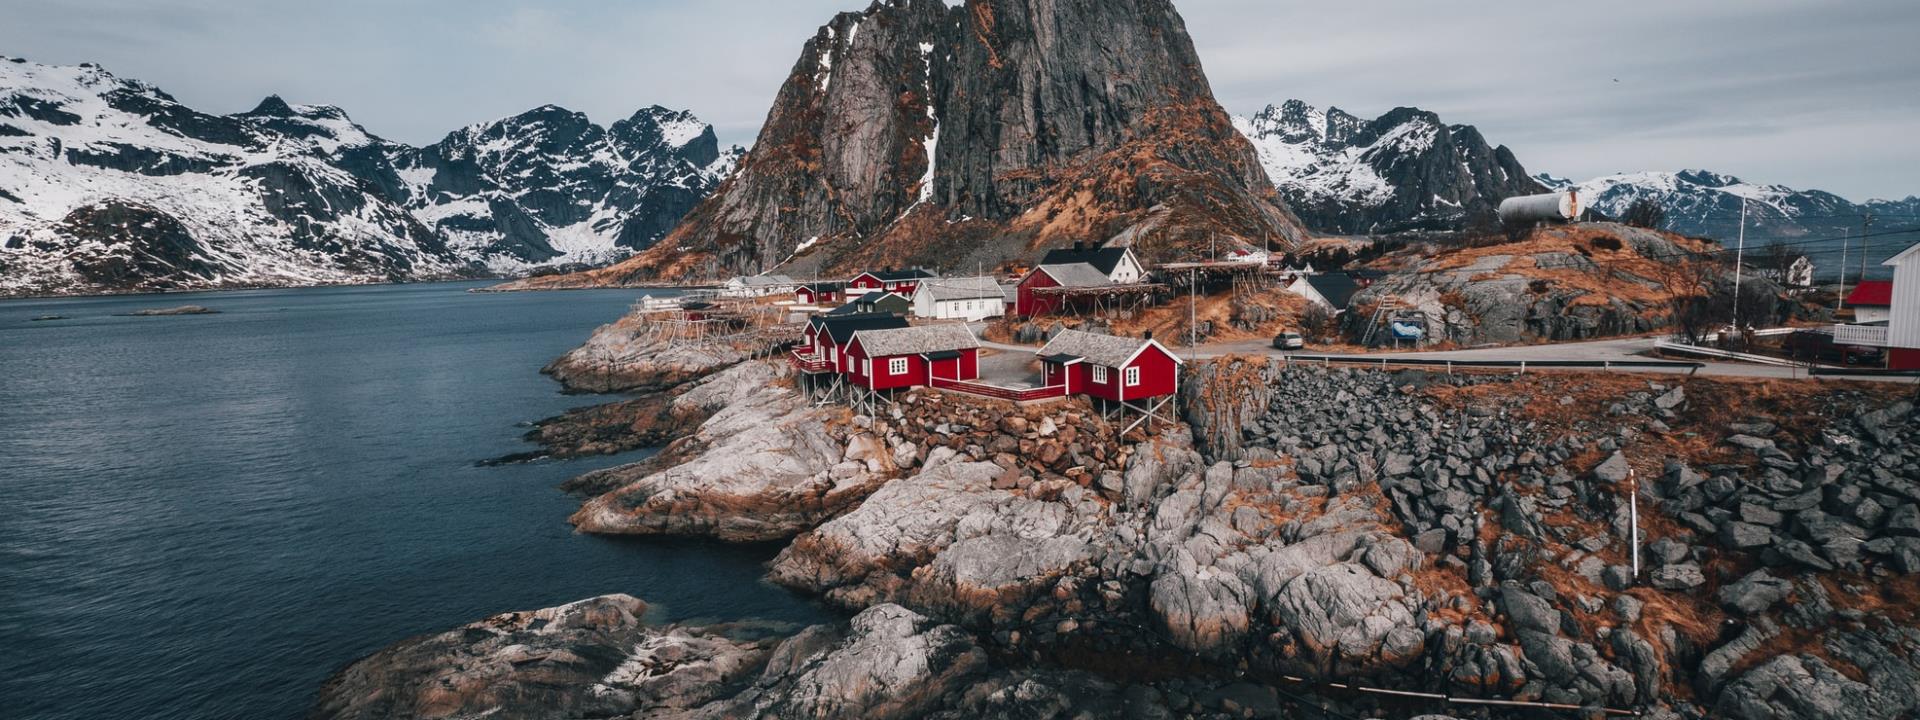 Travelhome | Camper huren Noorwegen